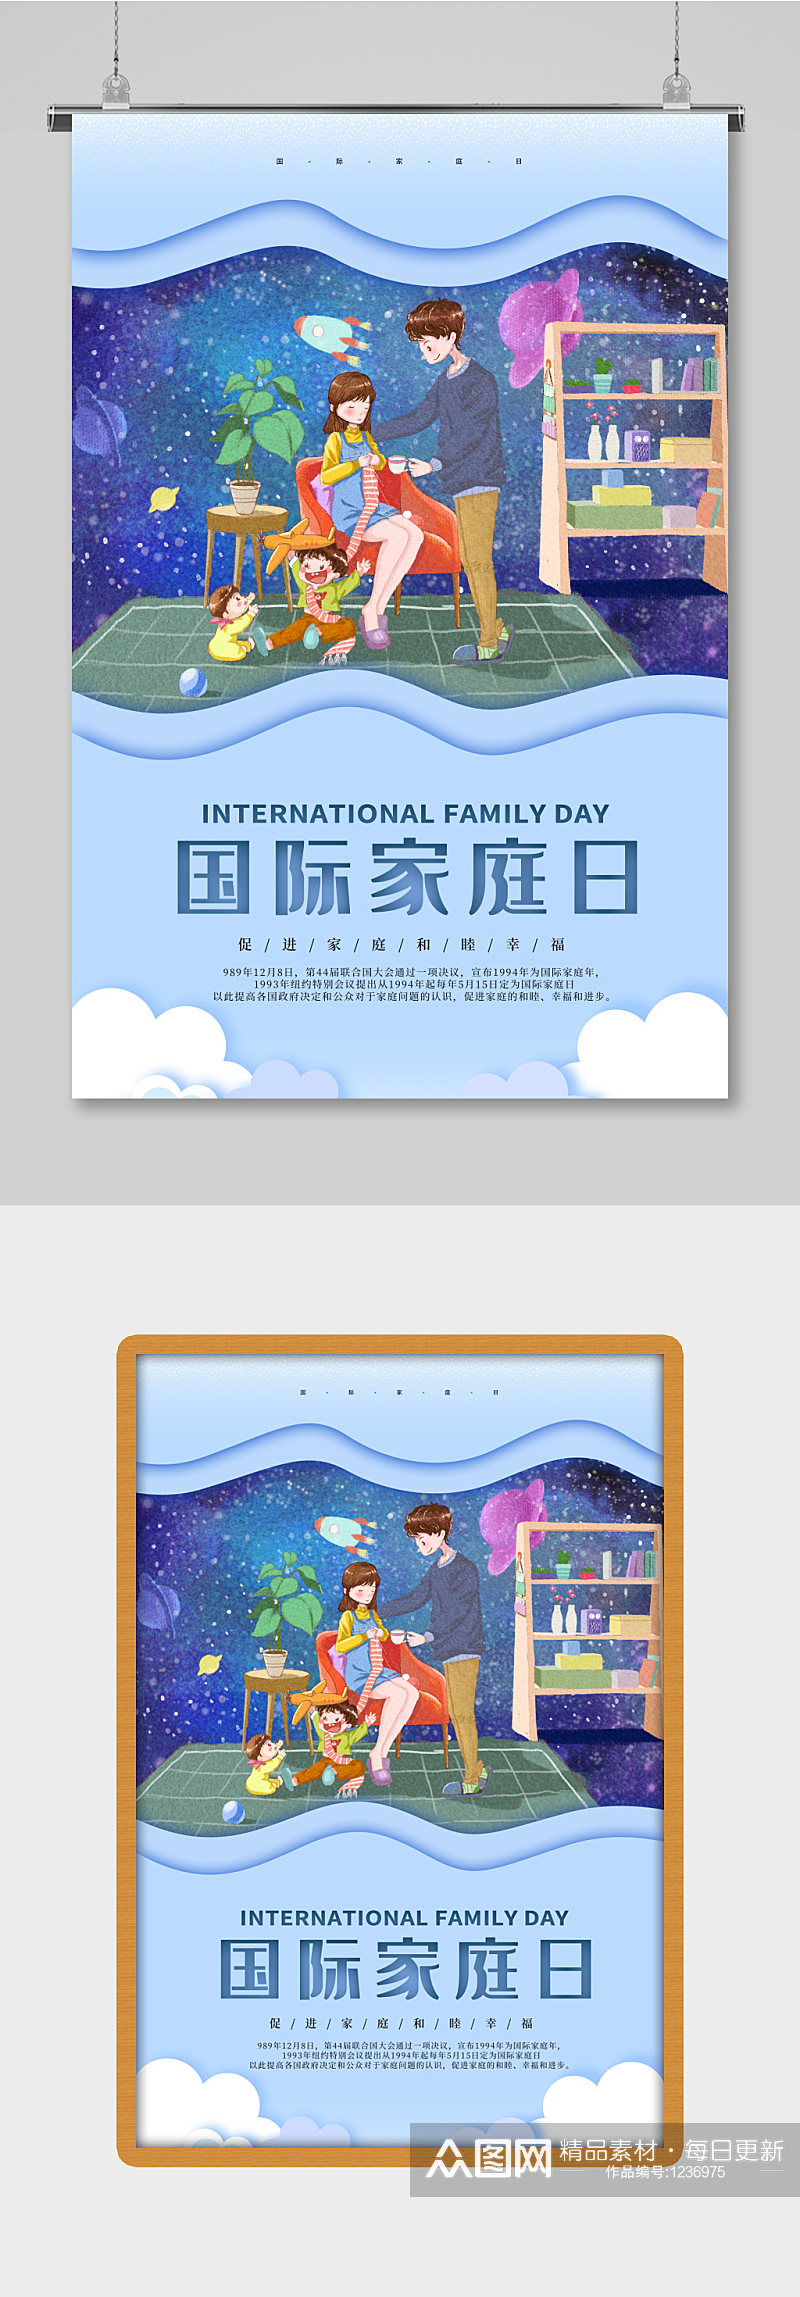 蓝色简约国际家庭日幸福一家人海报设计素材